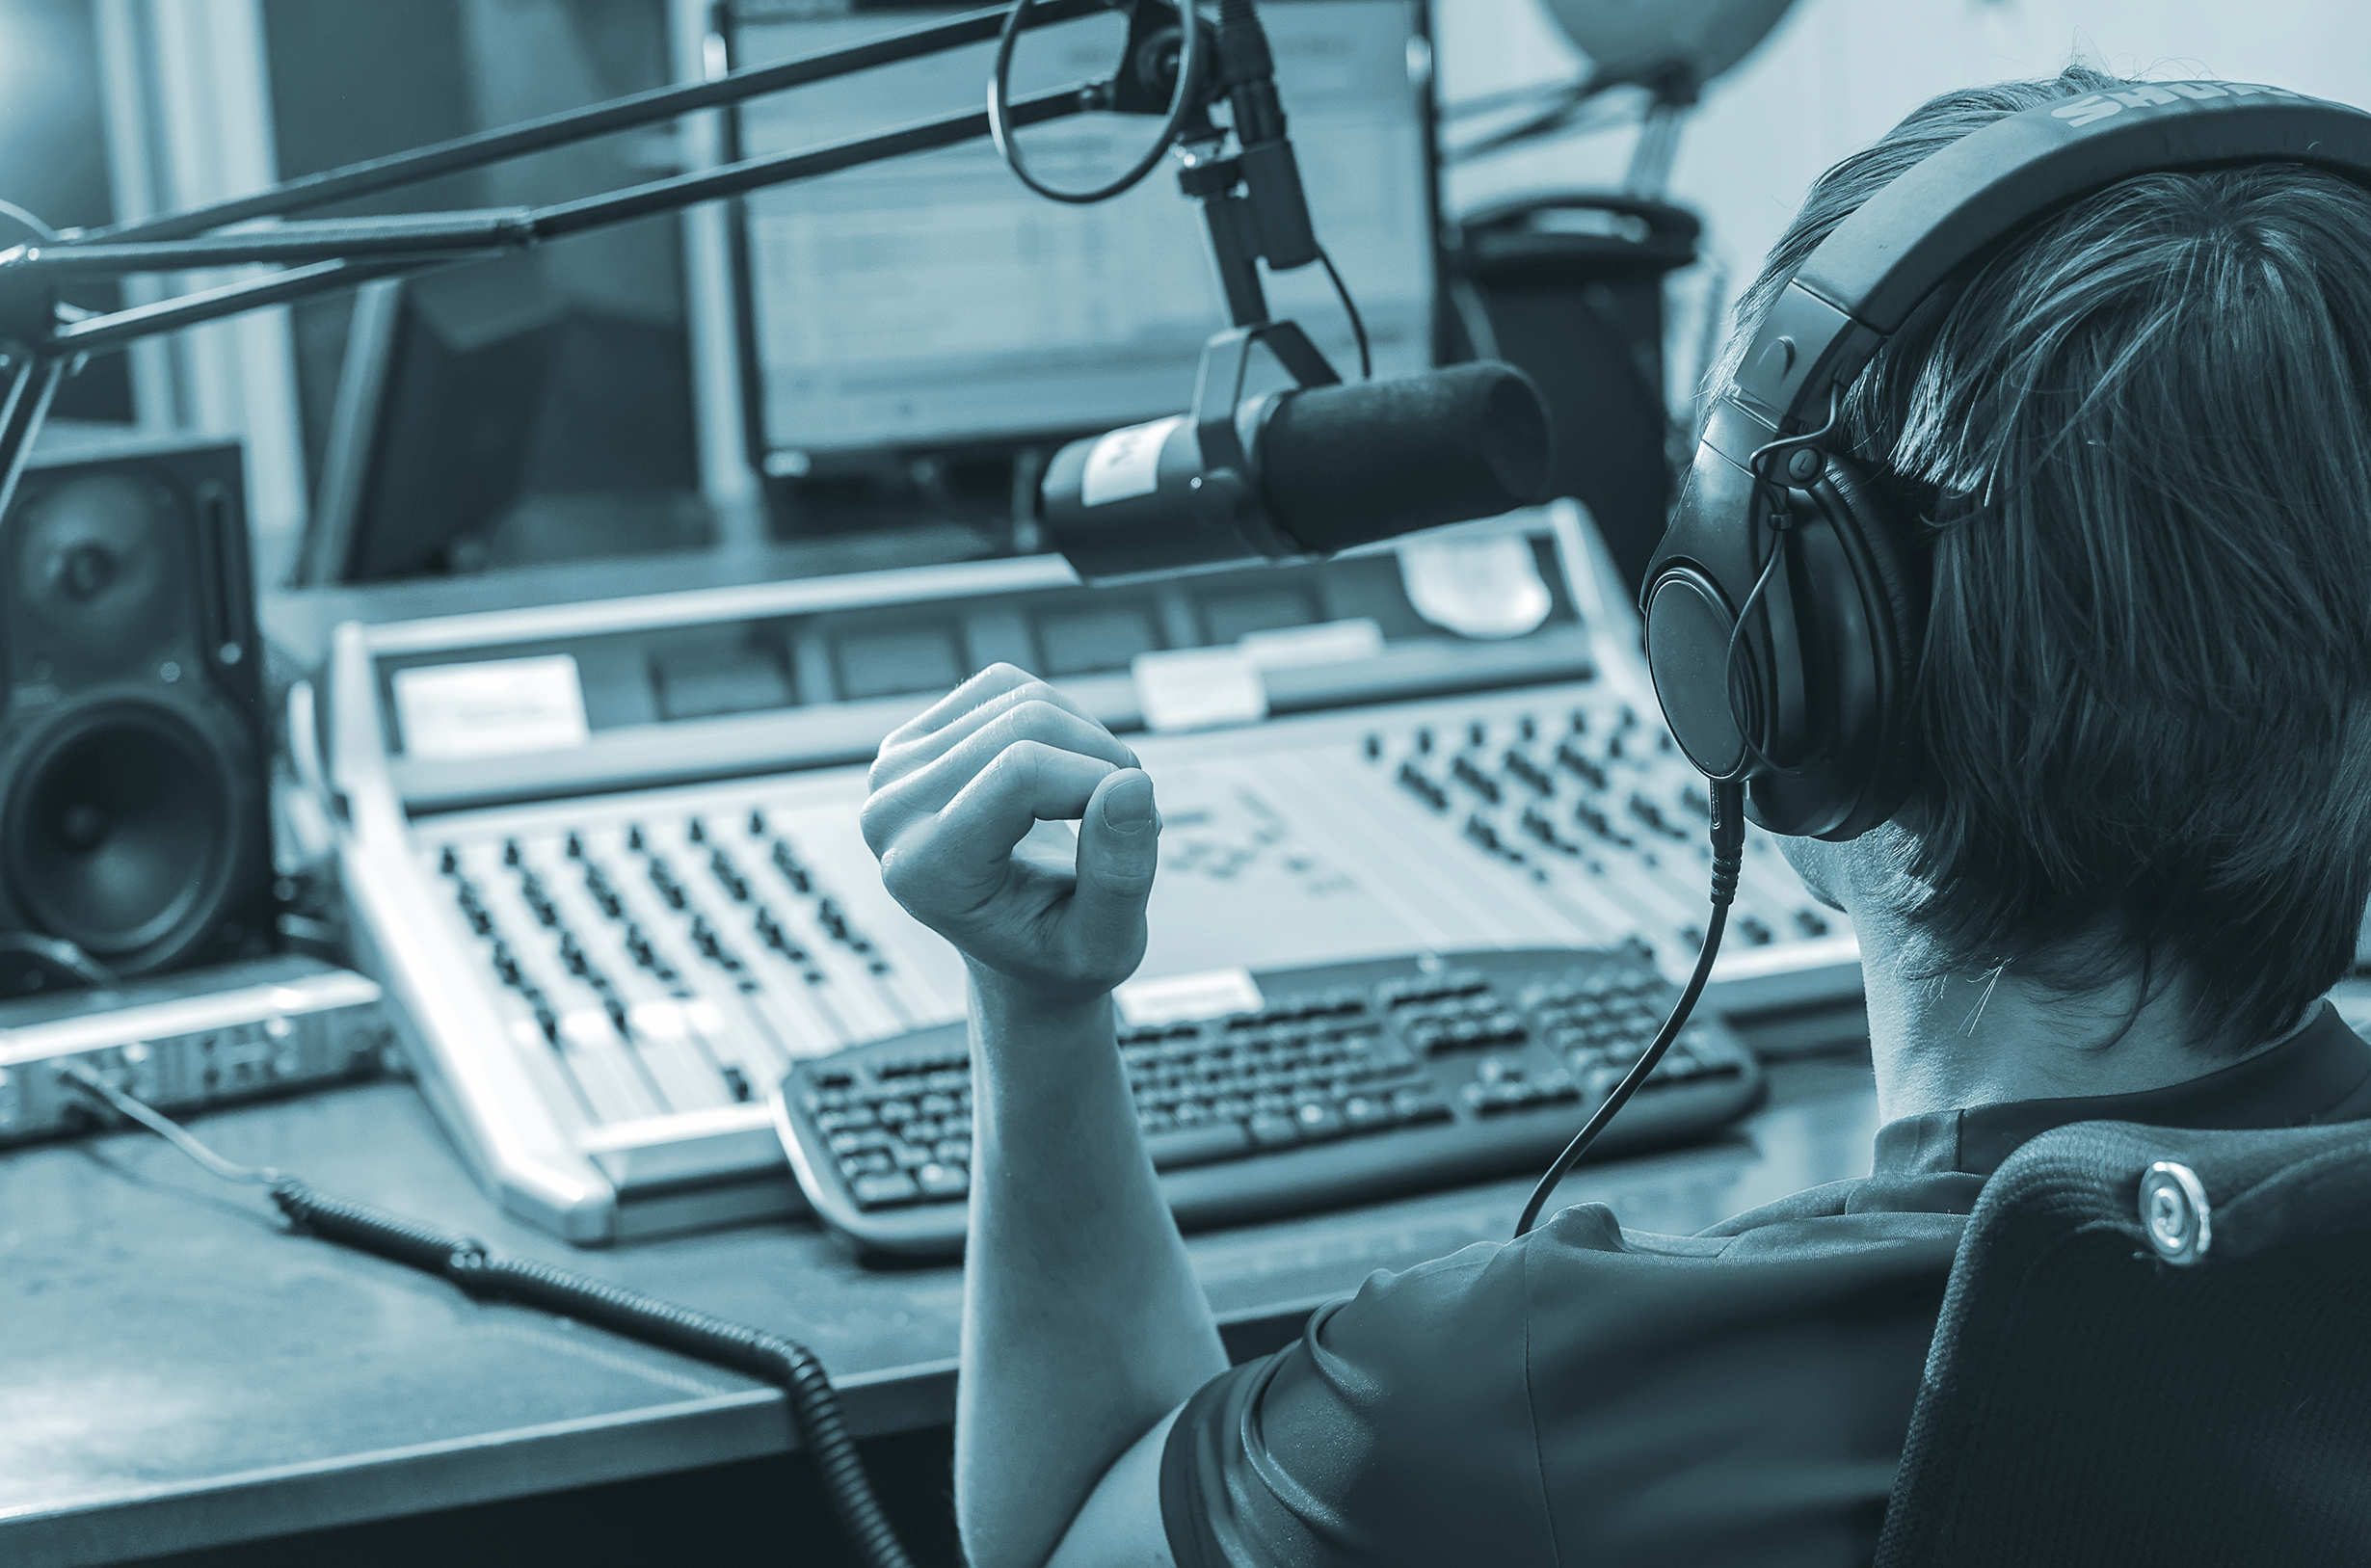 "שמרו על עצמכם שם בדרום": היפוך תפקידים בשיח שבין שדרני הרדיו החינוכי והמאזינים בזמן חירום